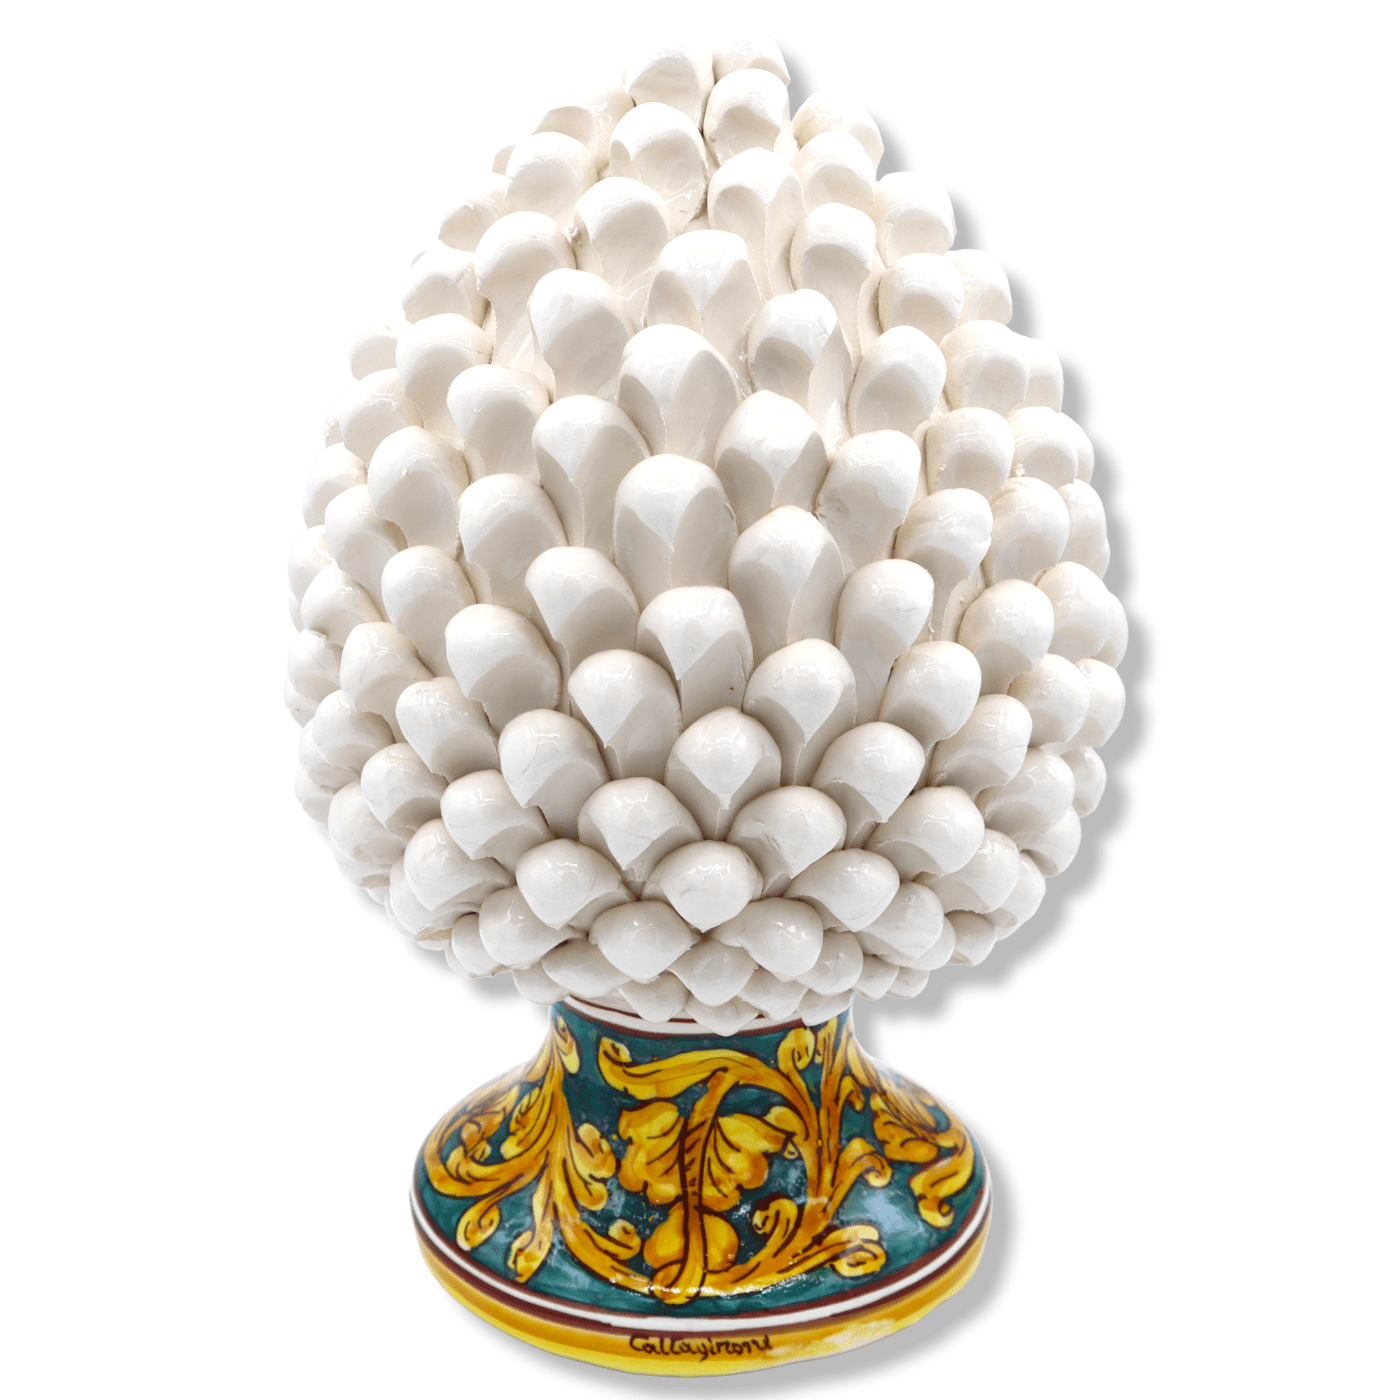 Sicilian pine cone in white Caltagirone ceramic, stem with baroque ...